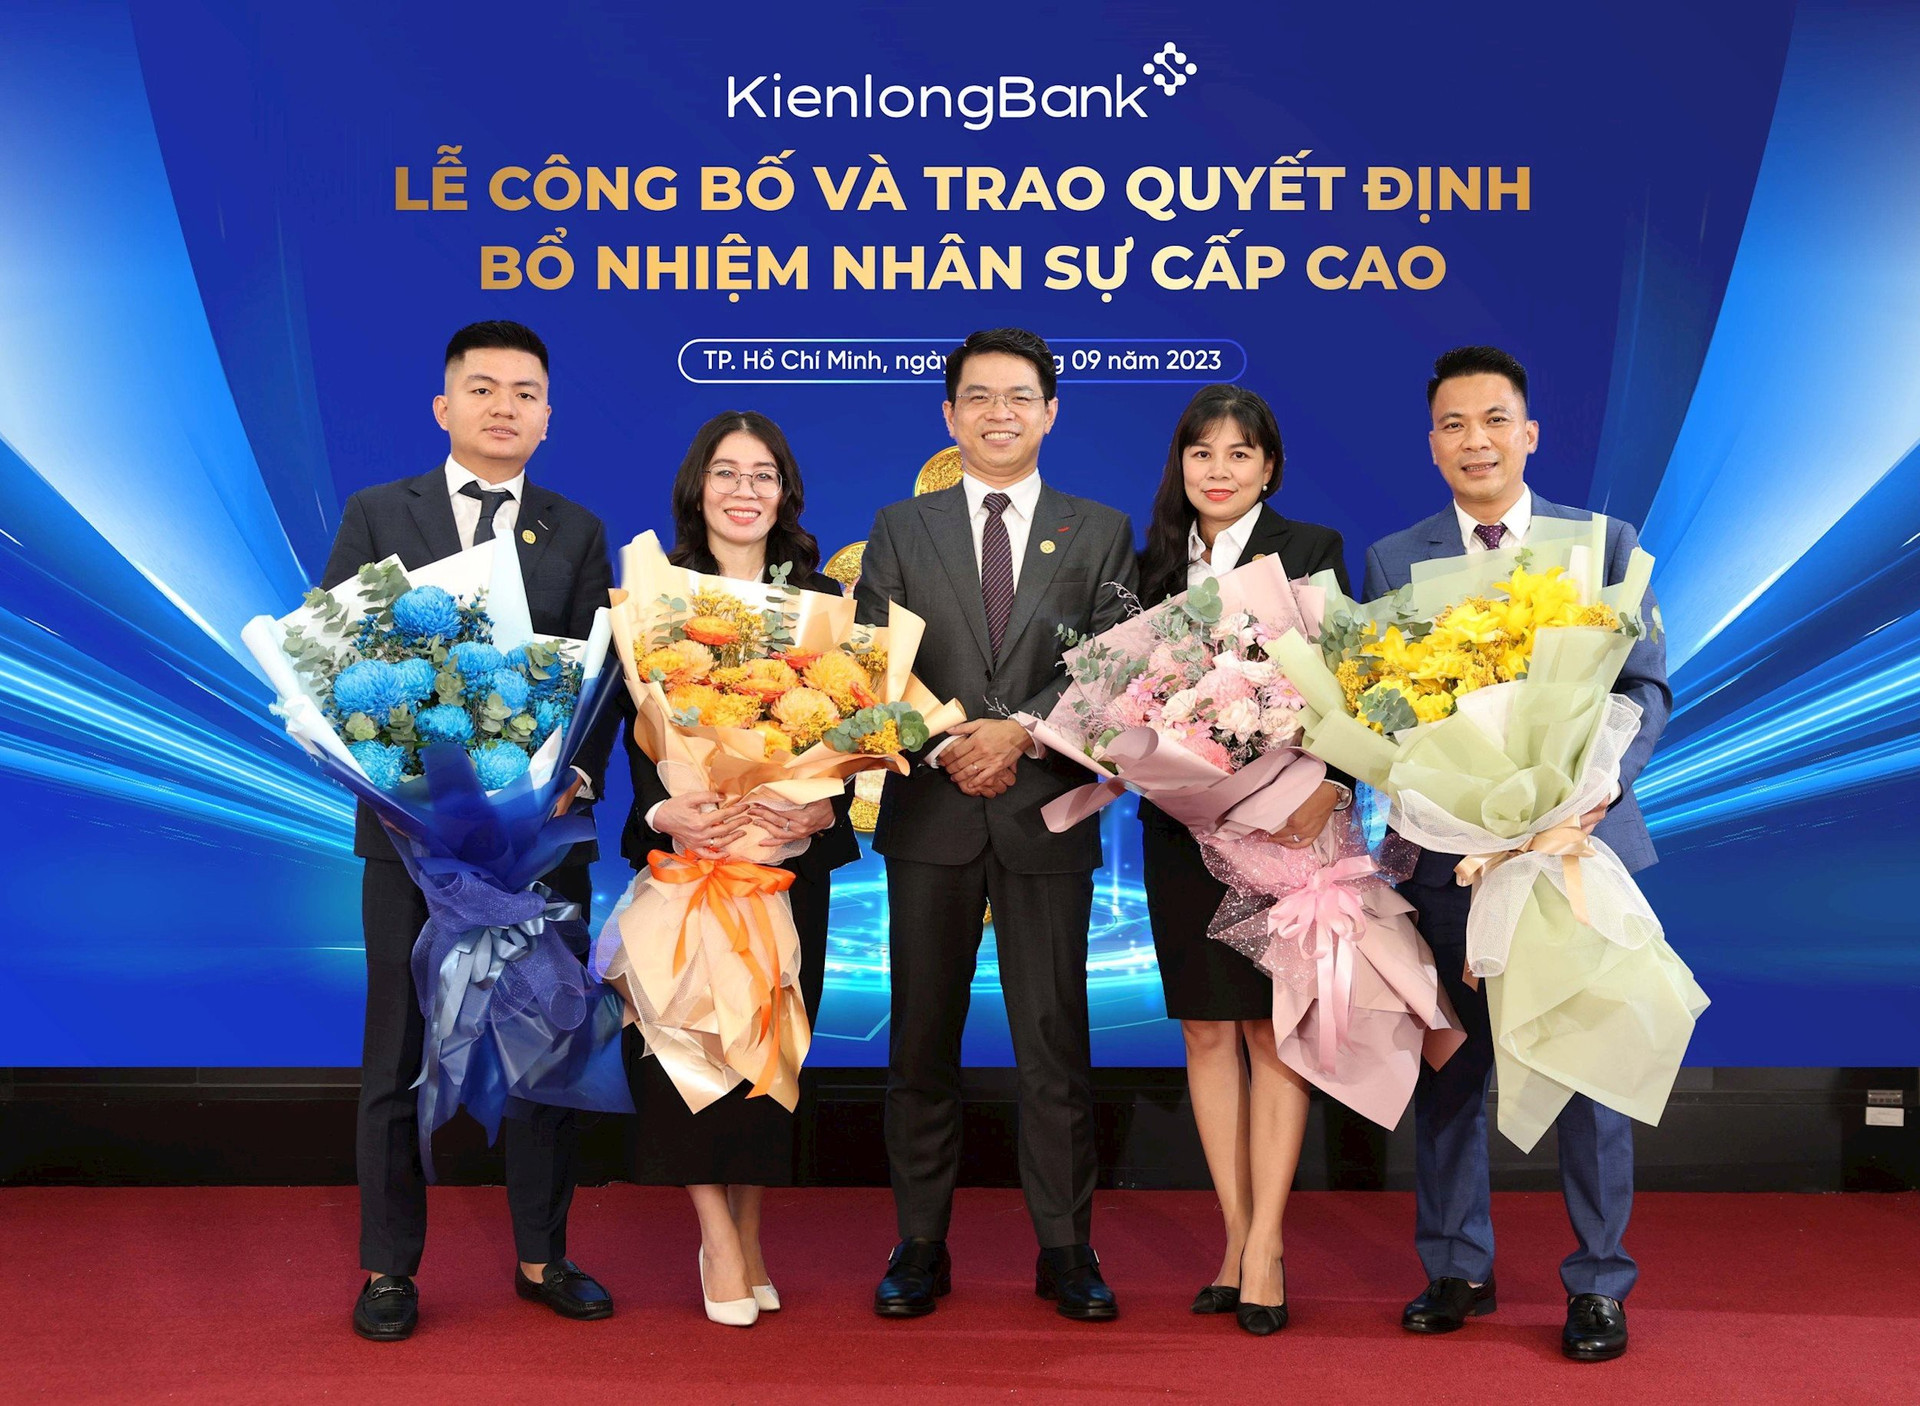 KienlongBank bổ nhiệm mới 1 Phó Tổng giám đốc và nhiều nhân sự cấp cao khác - Ảnh 2.